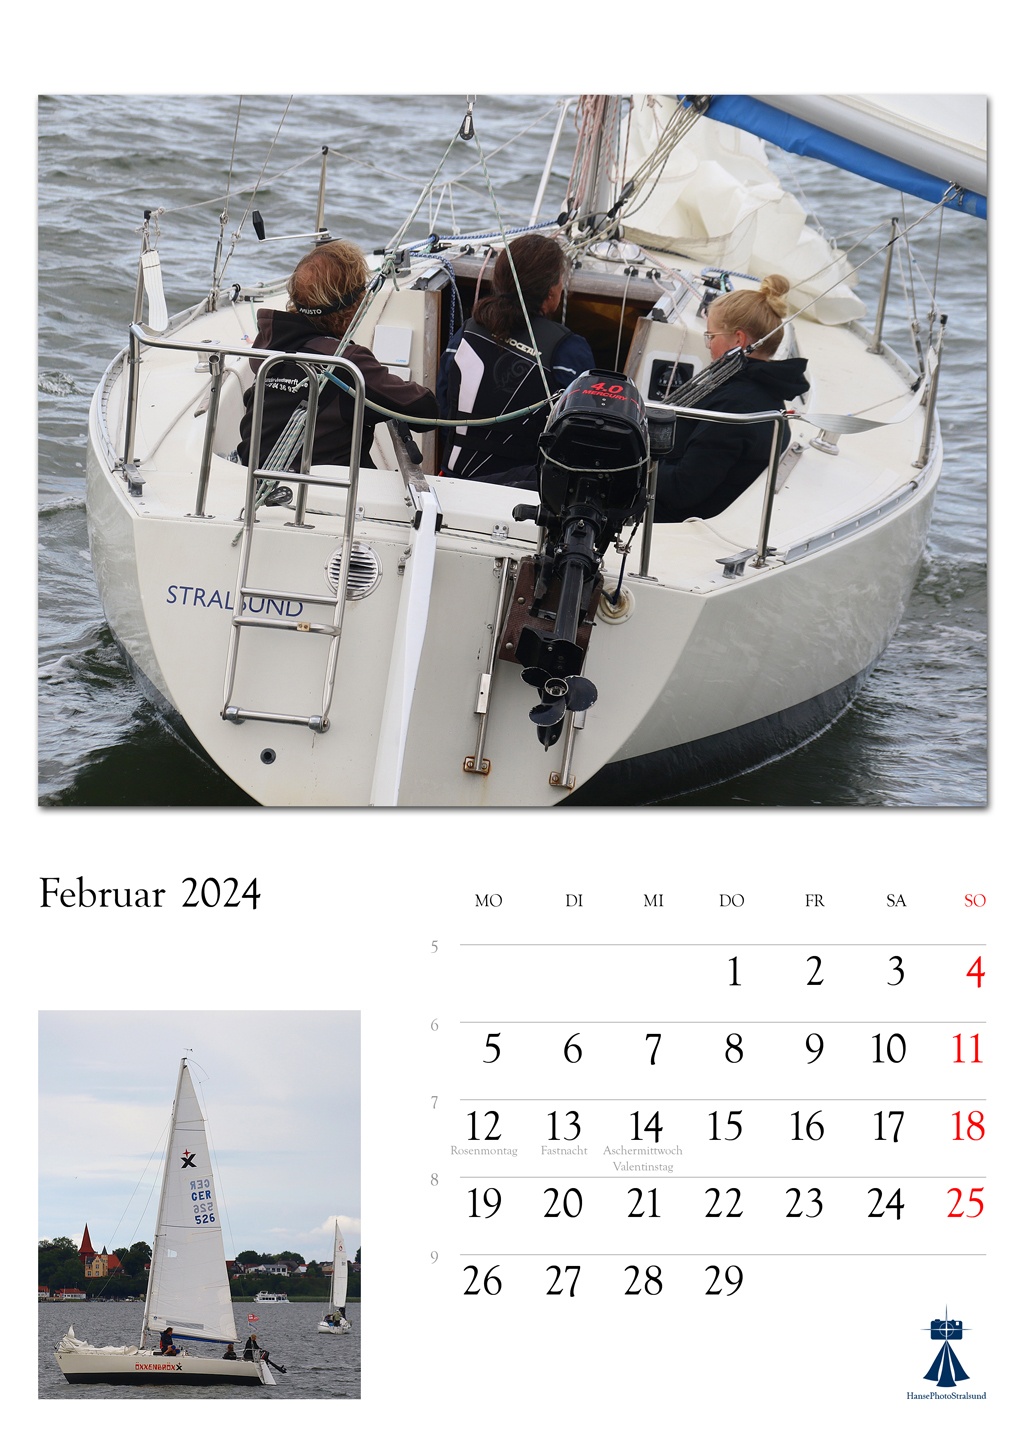 Sailing Crew Öxxenbröxx - 2024